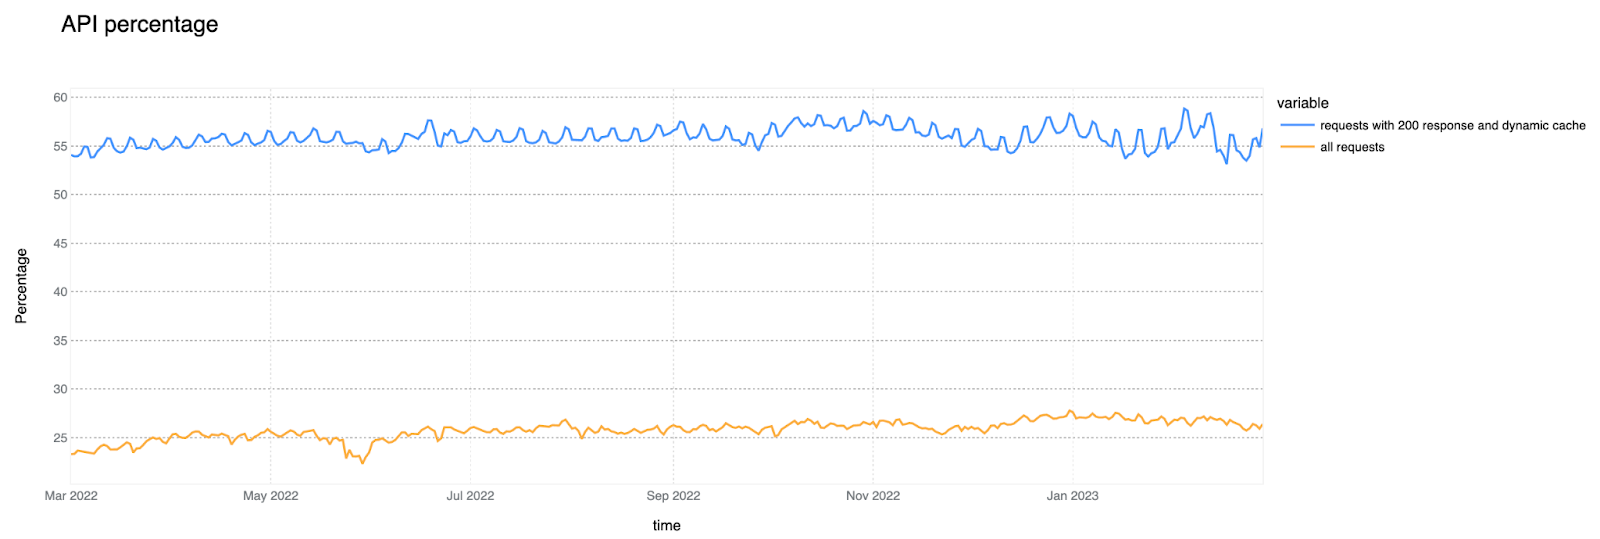 过去 12 个月的 API 流量：占总 HTTP 请求的 %，占 200 响应不可缓存 HTTP 请求的 %